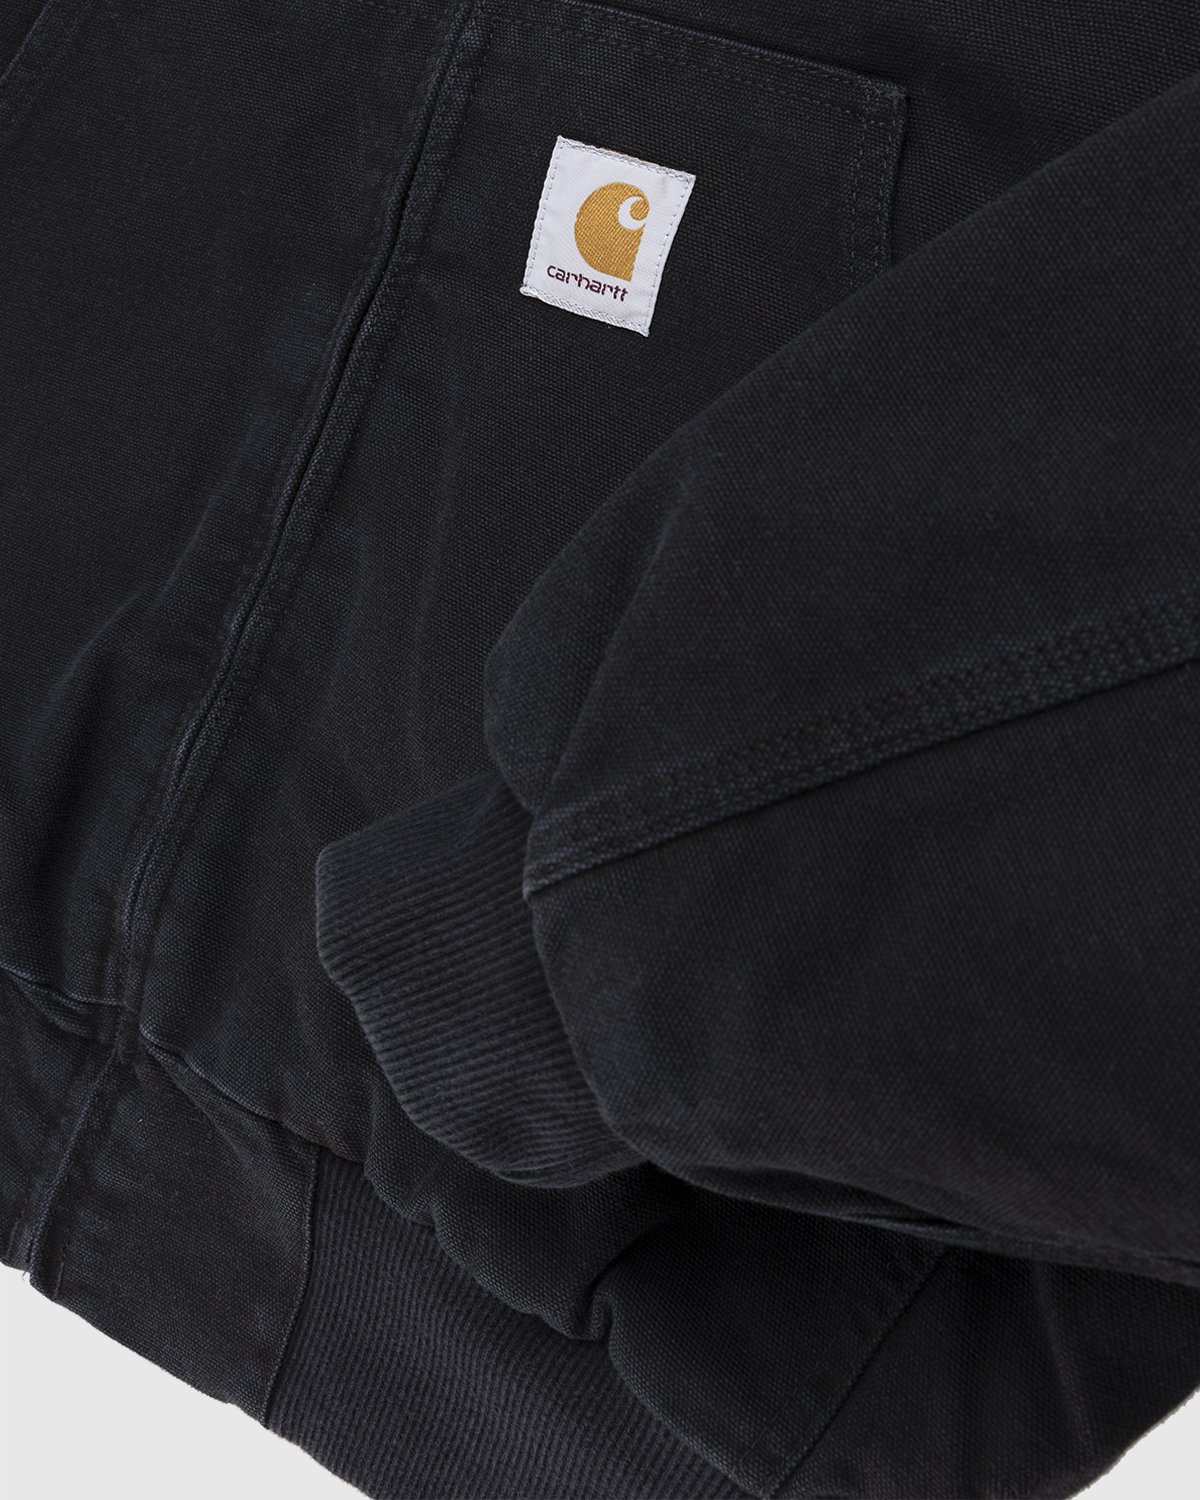 Carhartt WIP - OG Active Jacket Black - Clothing - Black - Image 5